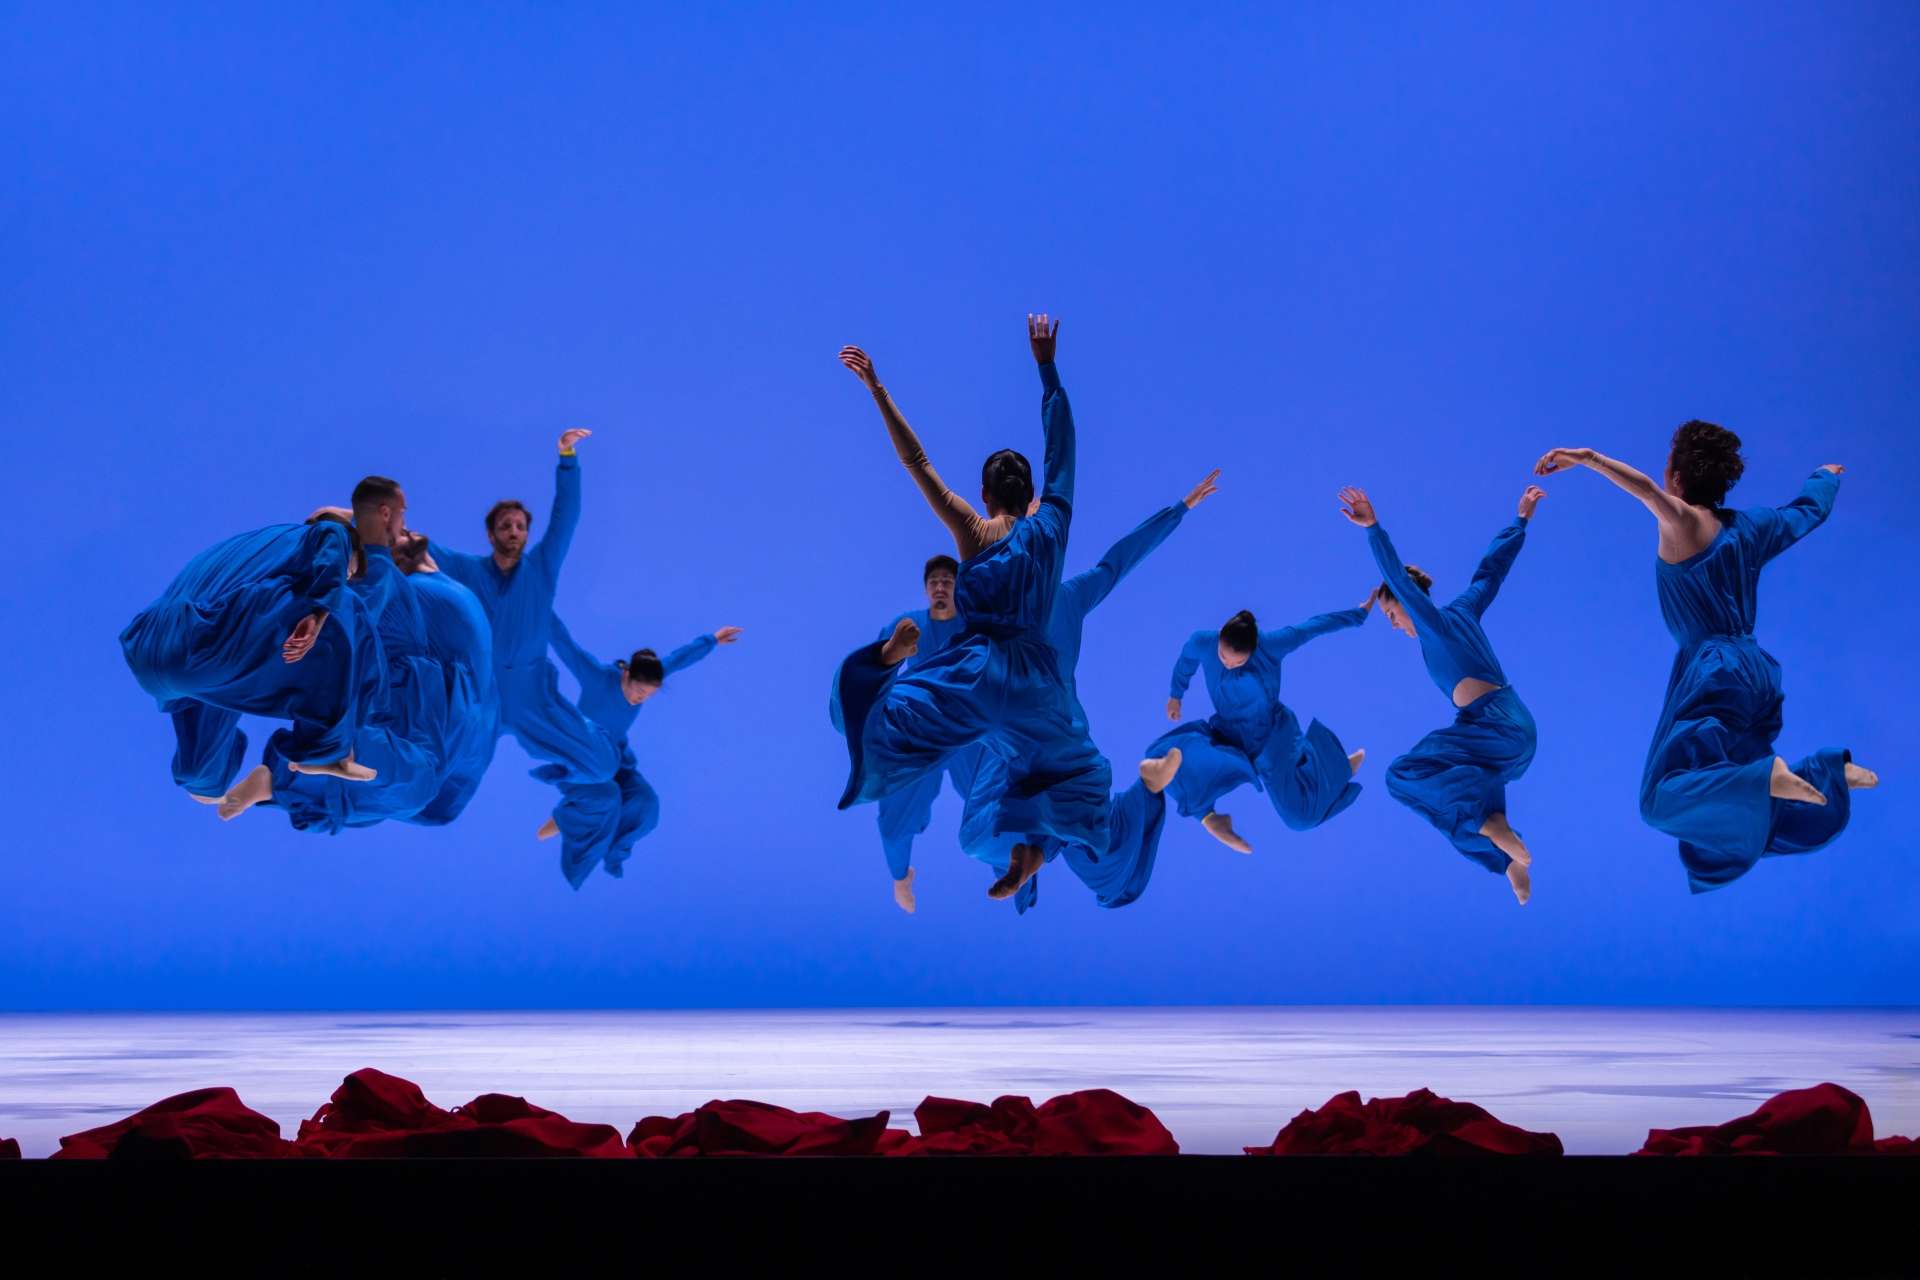 Les danseurs et danseuse de "Vïa" sautent en l'air dans leur costume bleu.